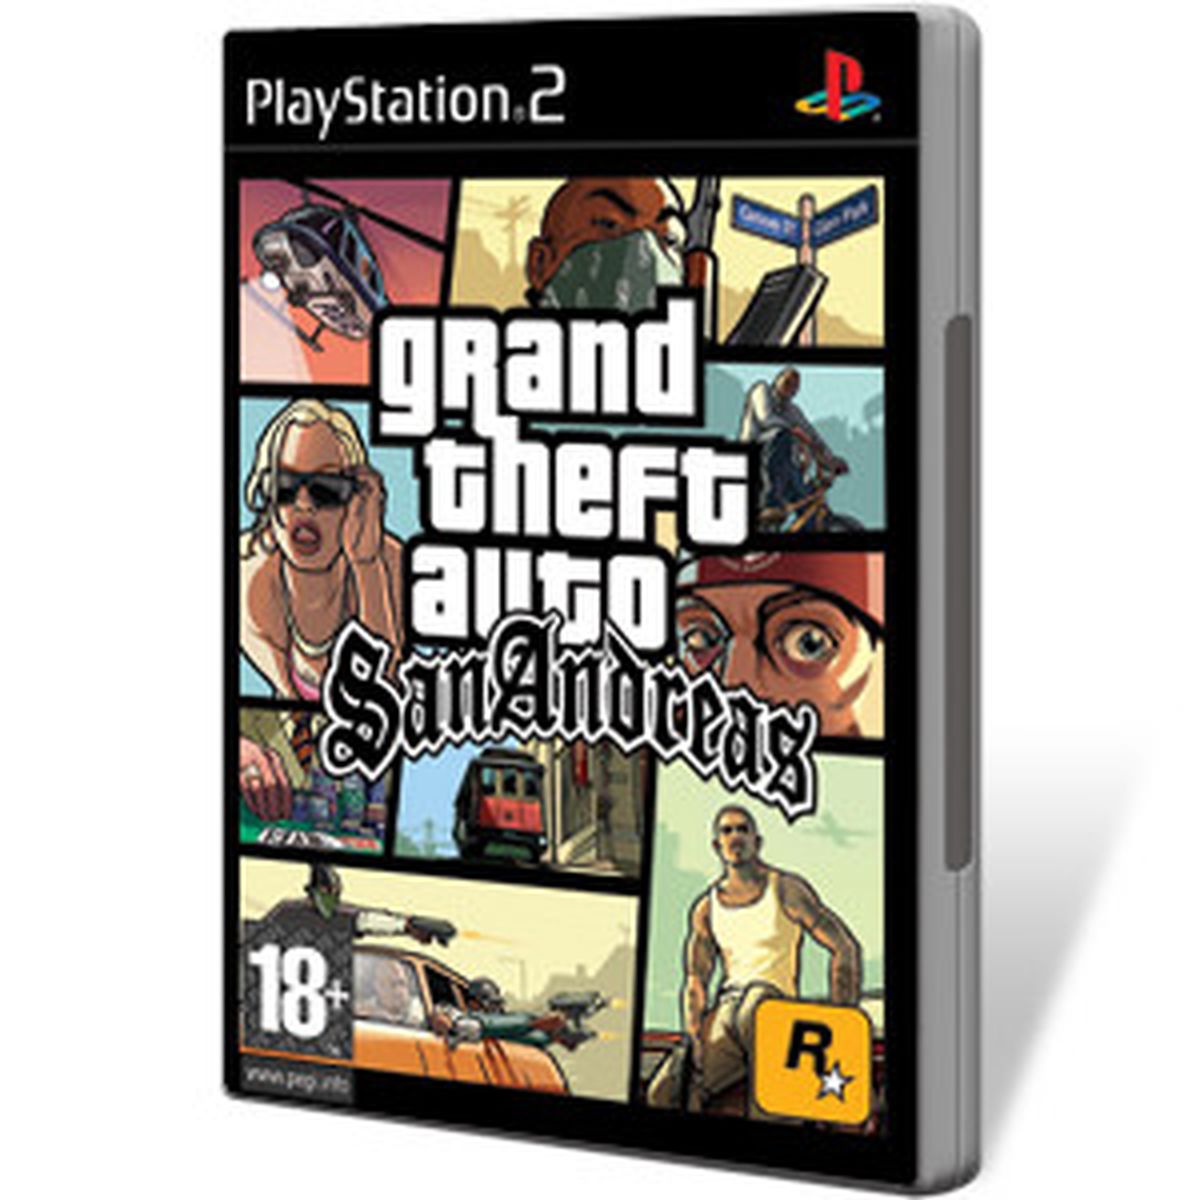 Trucos GTA San Andreas - todos los códigos de PS2, PC y Android (2019)